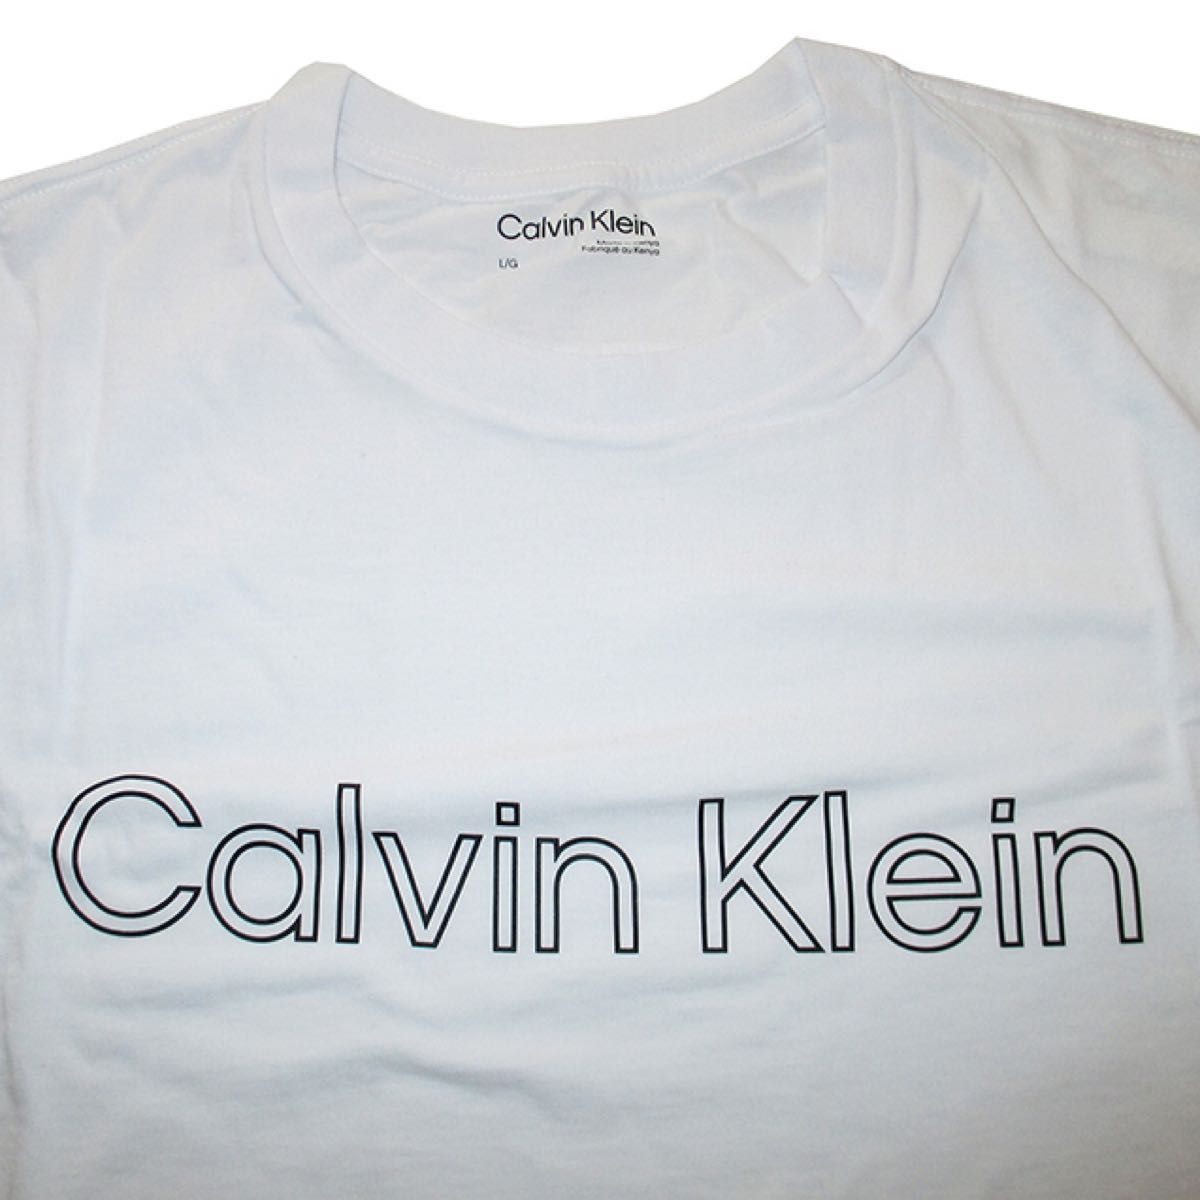 カルバンクライン Calvin Klein メンズ Tシャツ Lサイズ 半袖 丸首 フロントロゴ Brilliant White